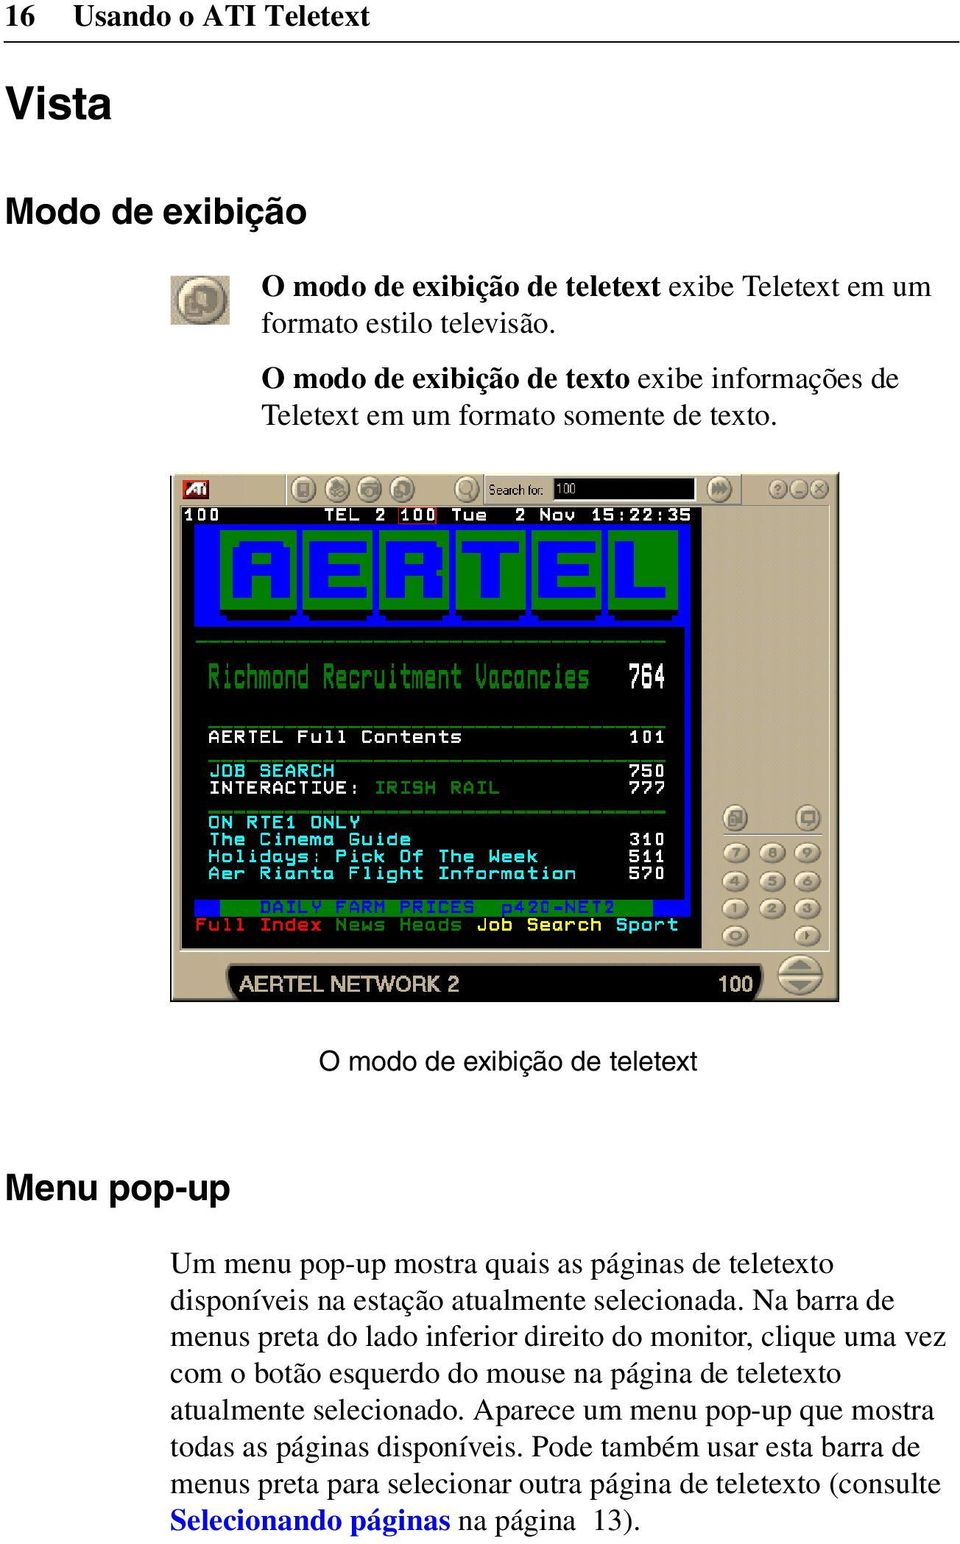 O modo de exibição de teletext Menu pop-up Um menu pop-up mostra quais as páginas de teletexto disponíveis na estação atualmente selecionada.